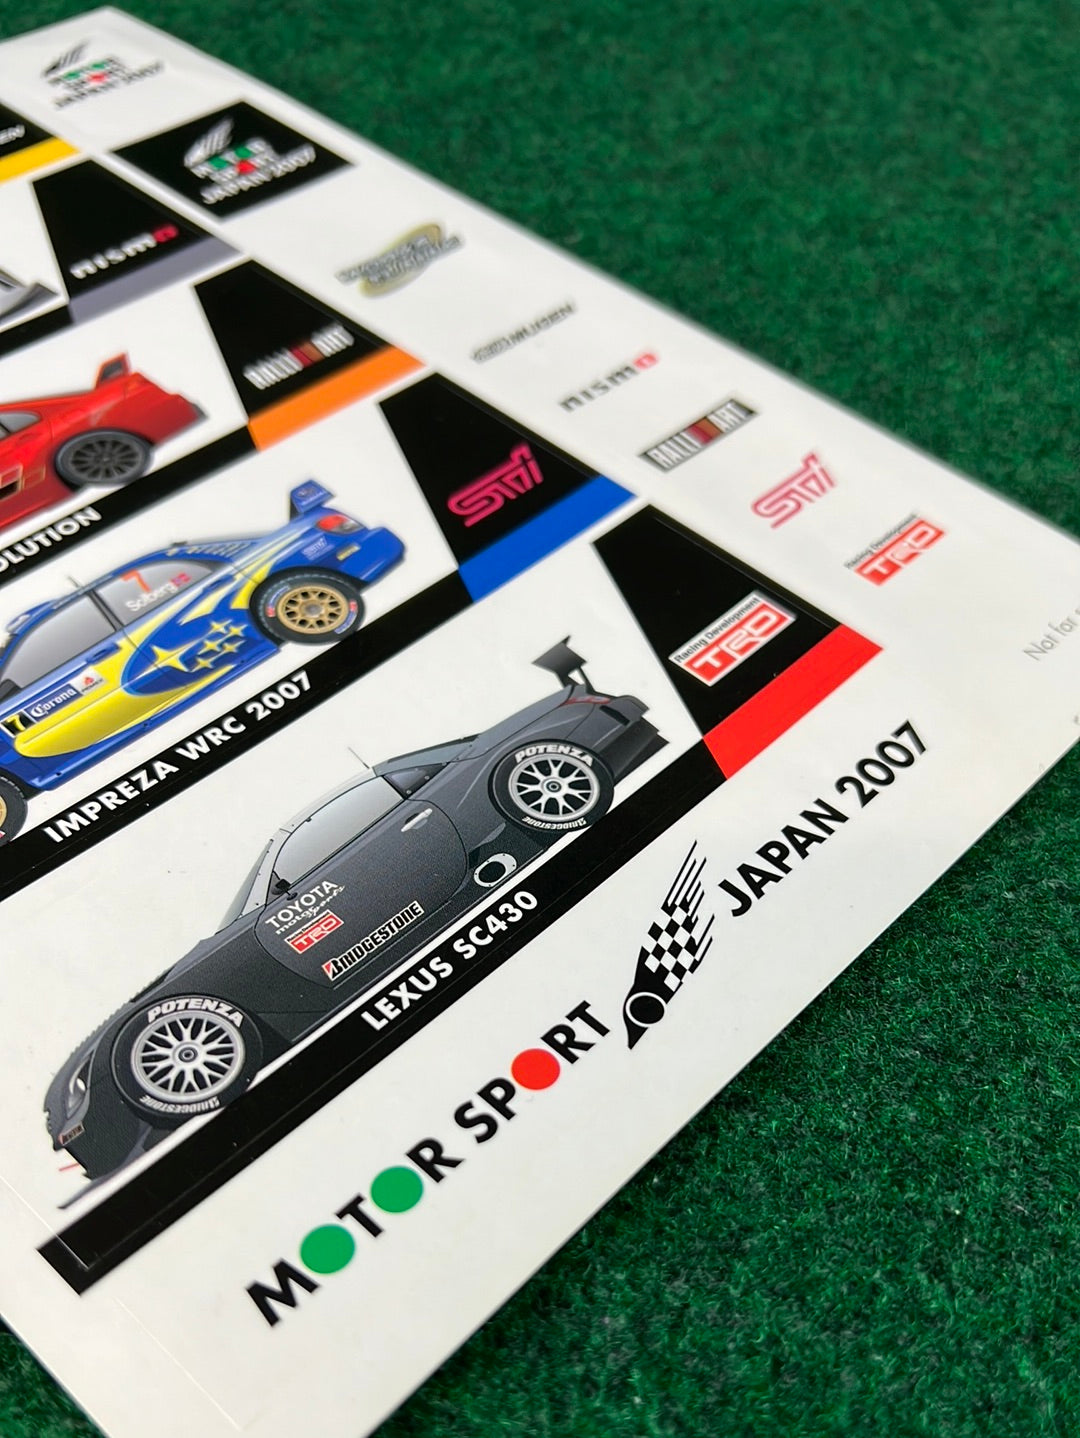 Motor Sport Japan 2007 Sticker Sheet (2)